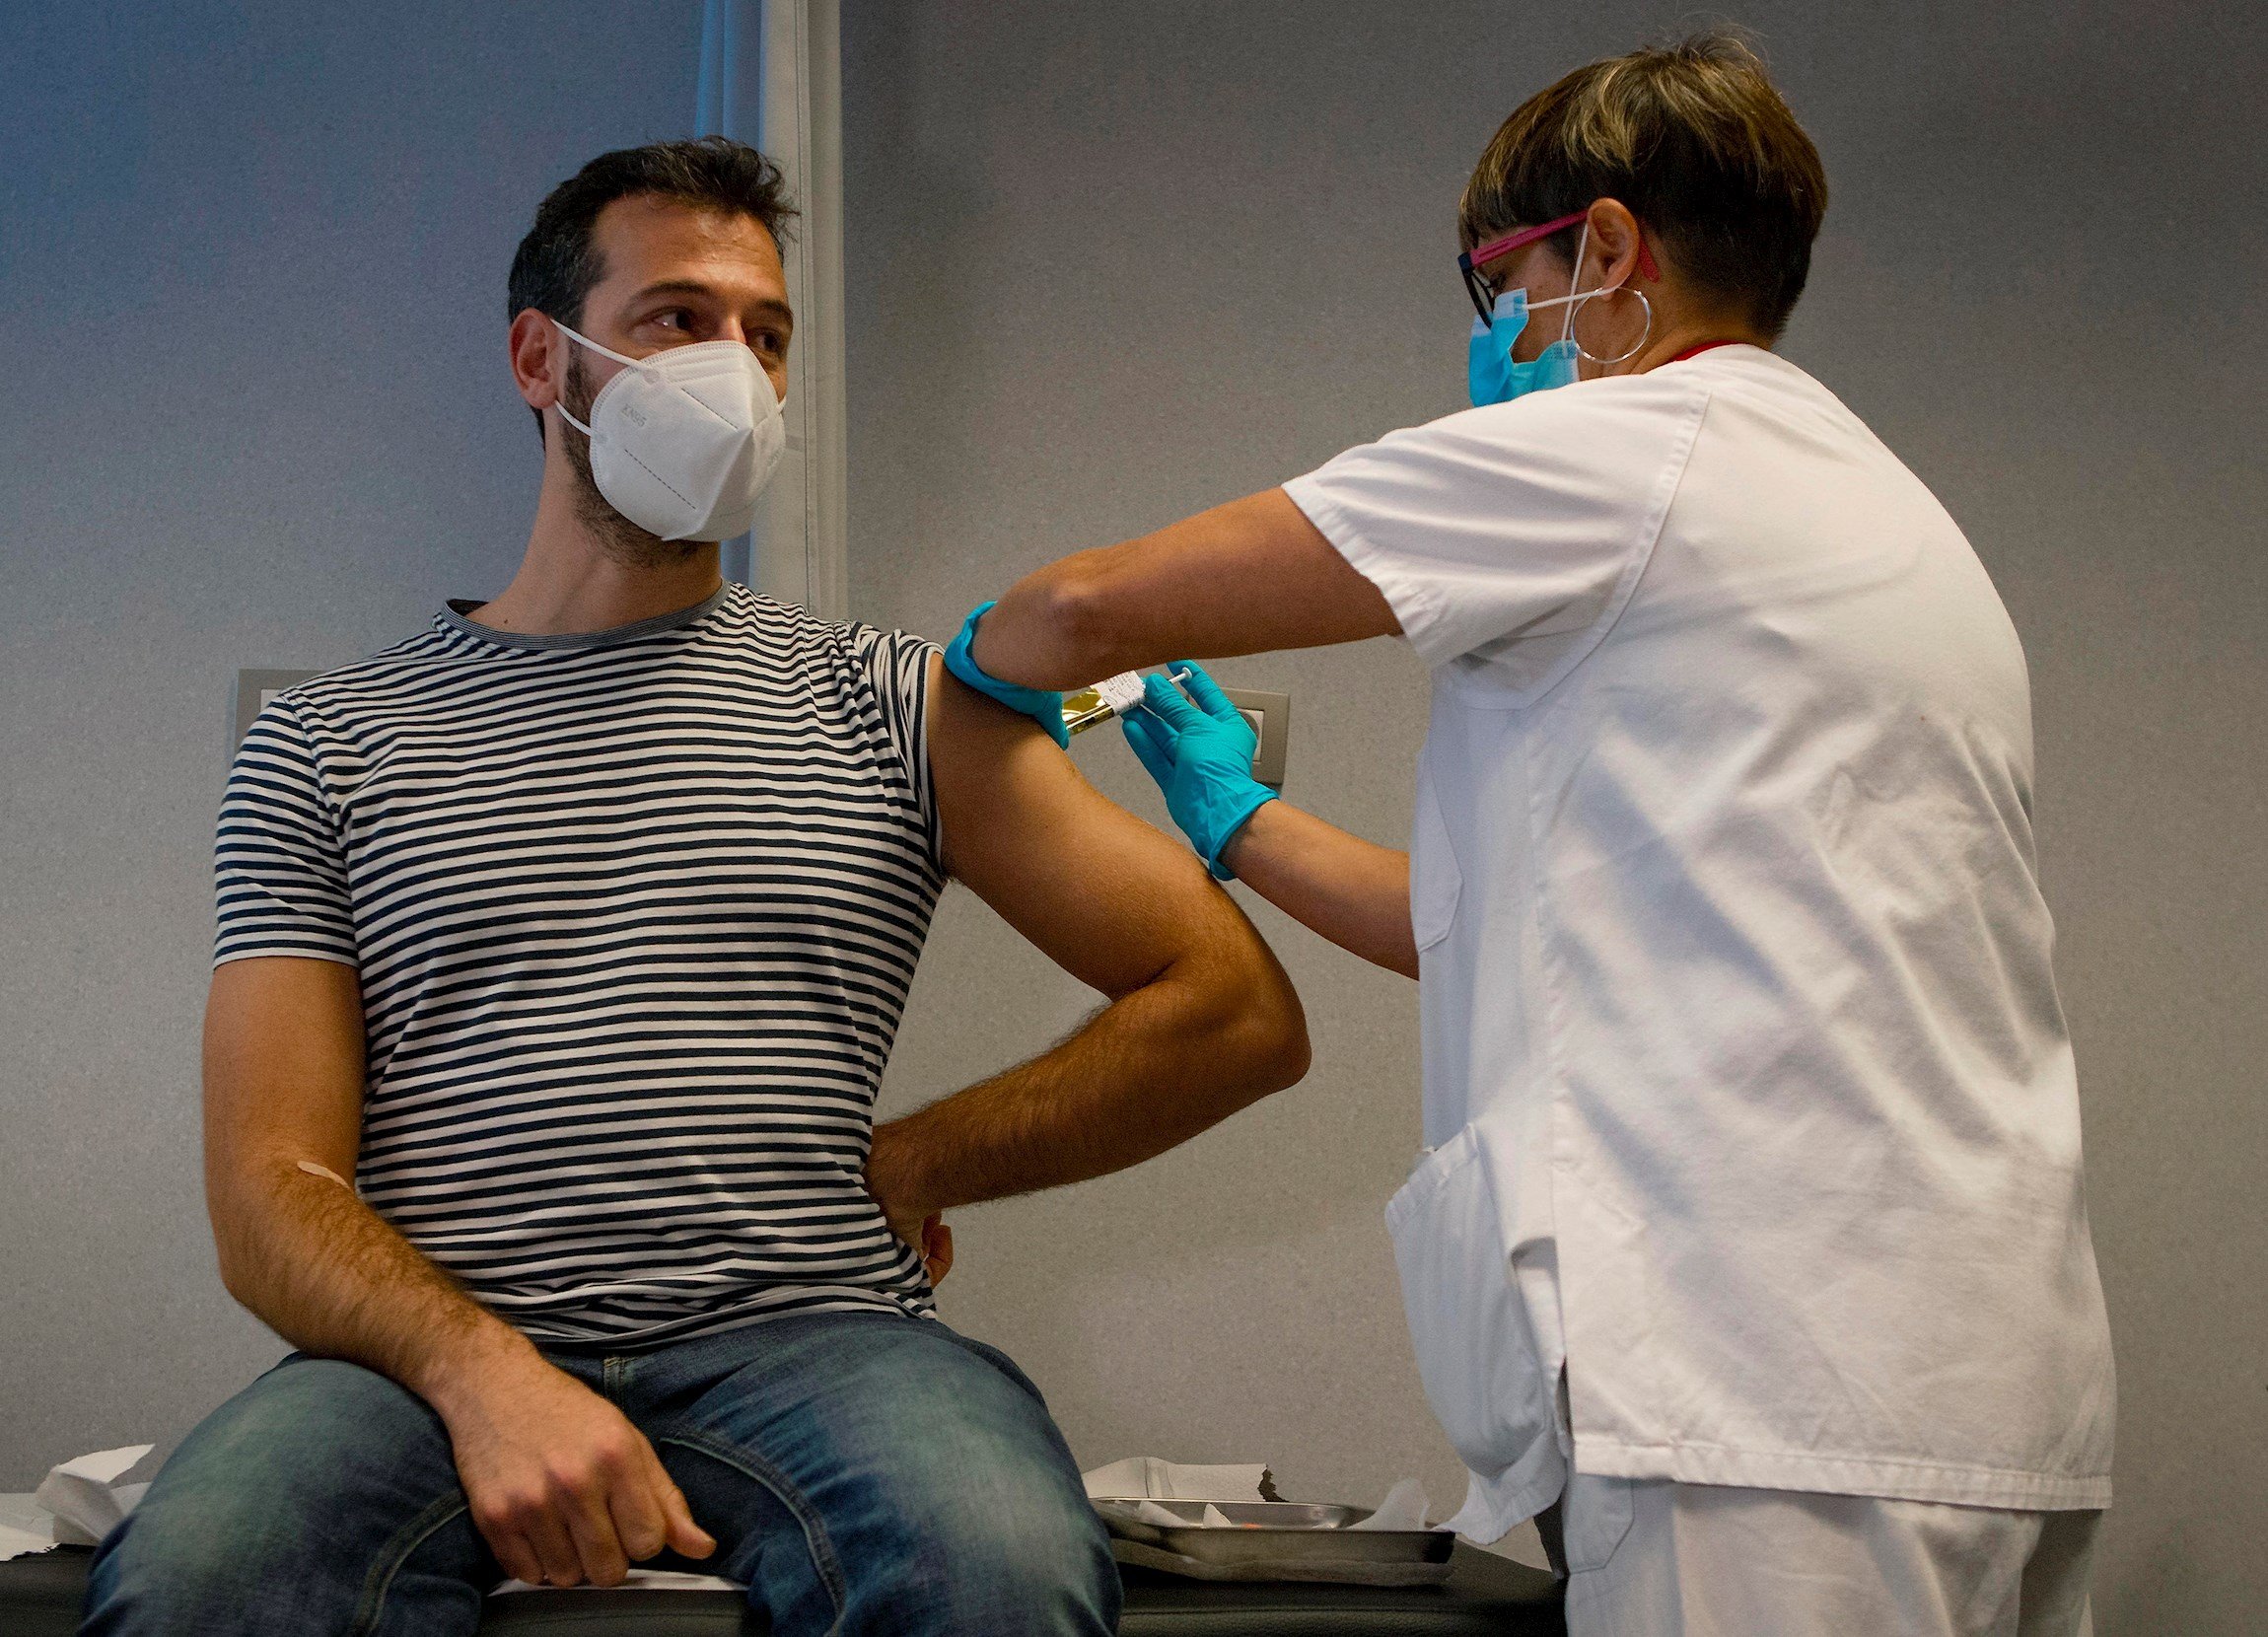 El 28% de los españoles no están dispuestos a vacunarse inmediatamente